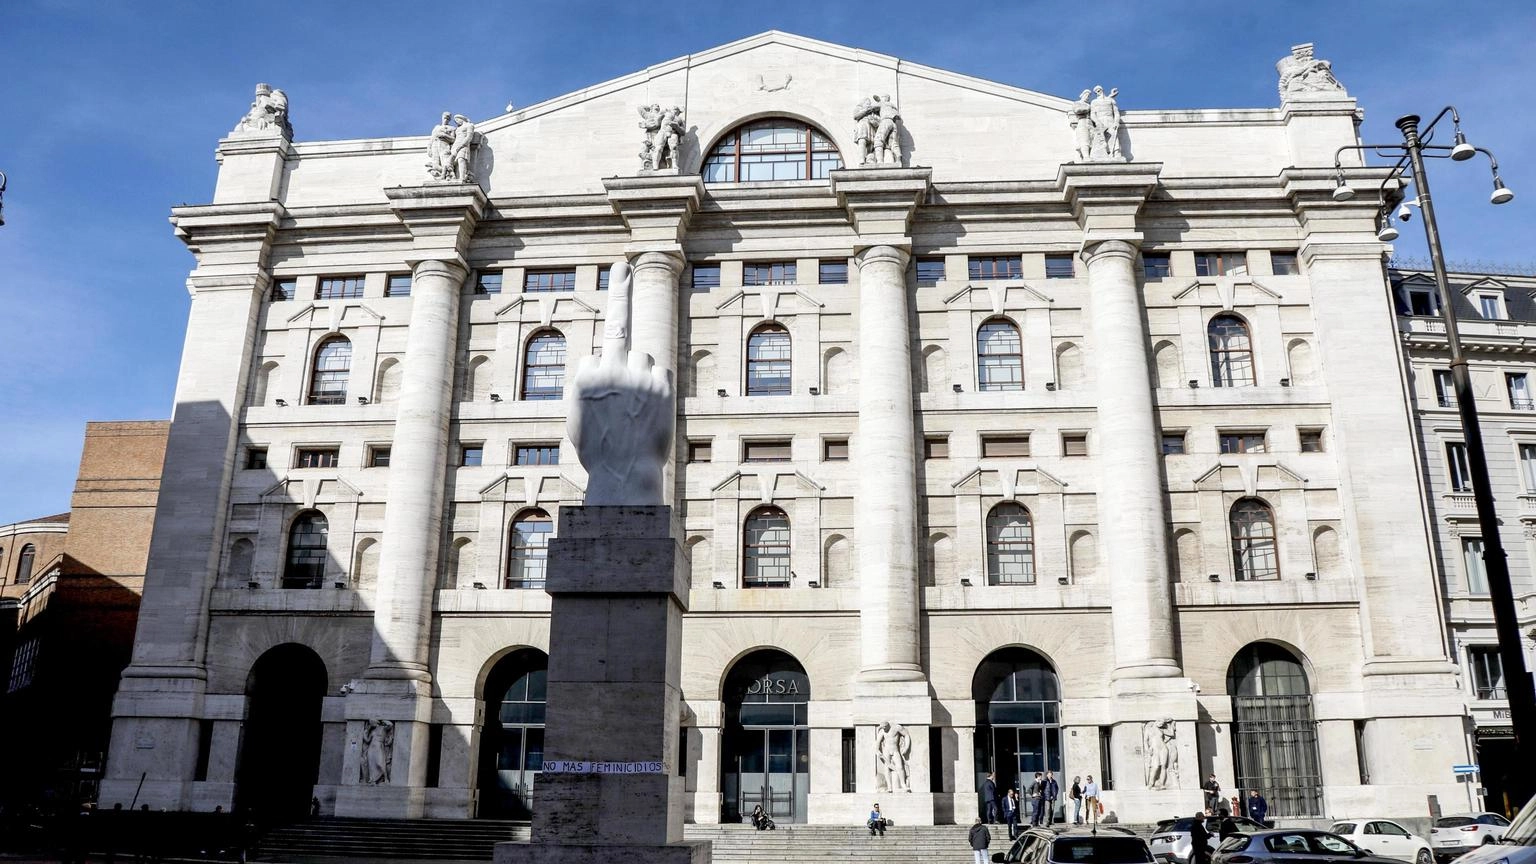 Borsa: Milano chiude in rialzo, Ftse Mib +1,29%